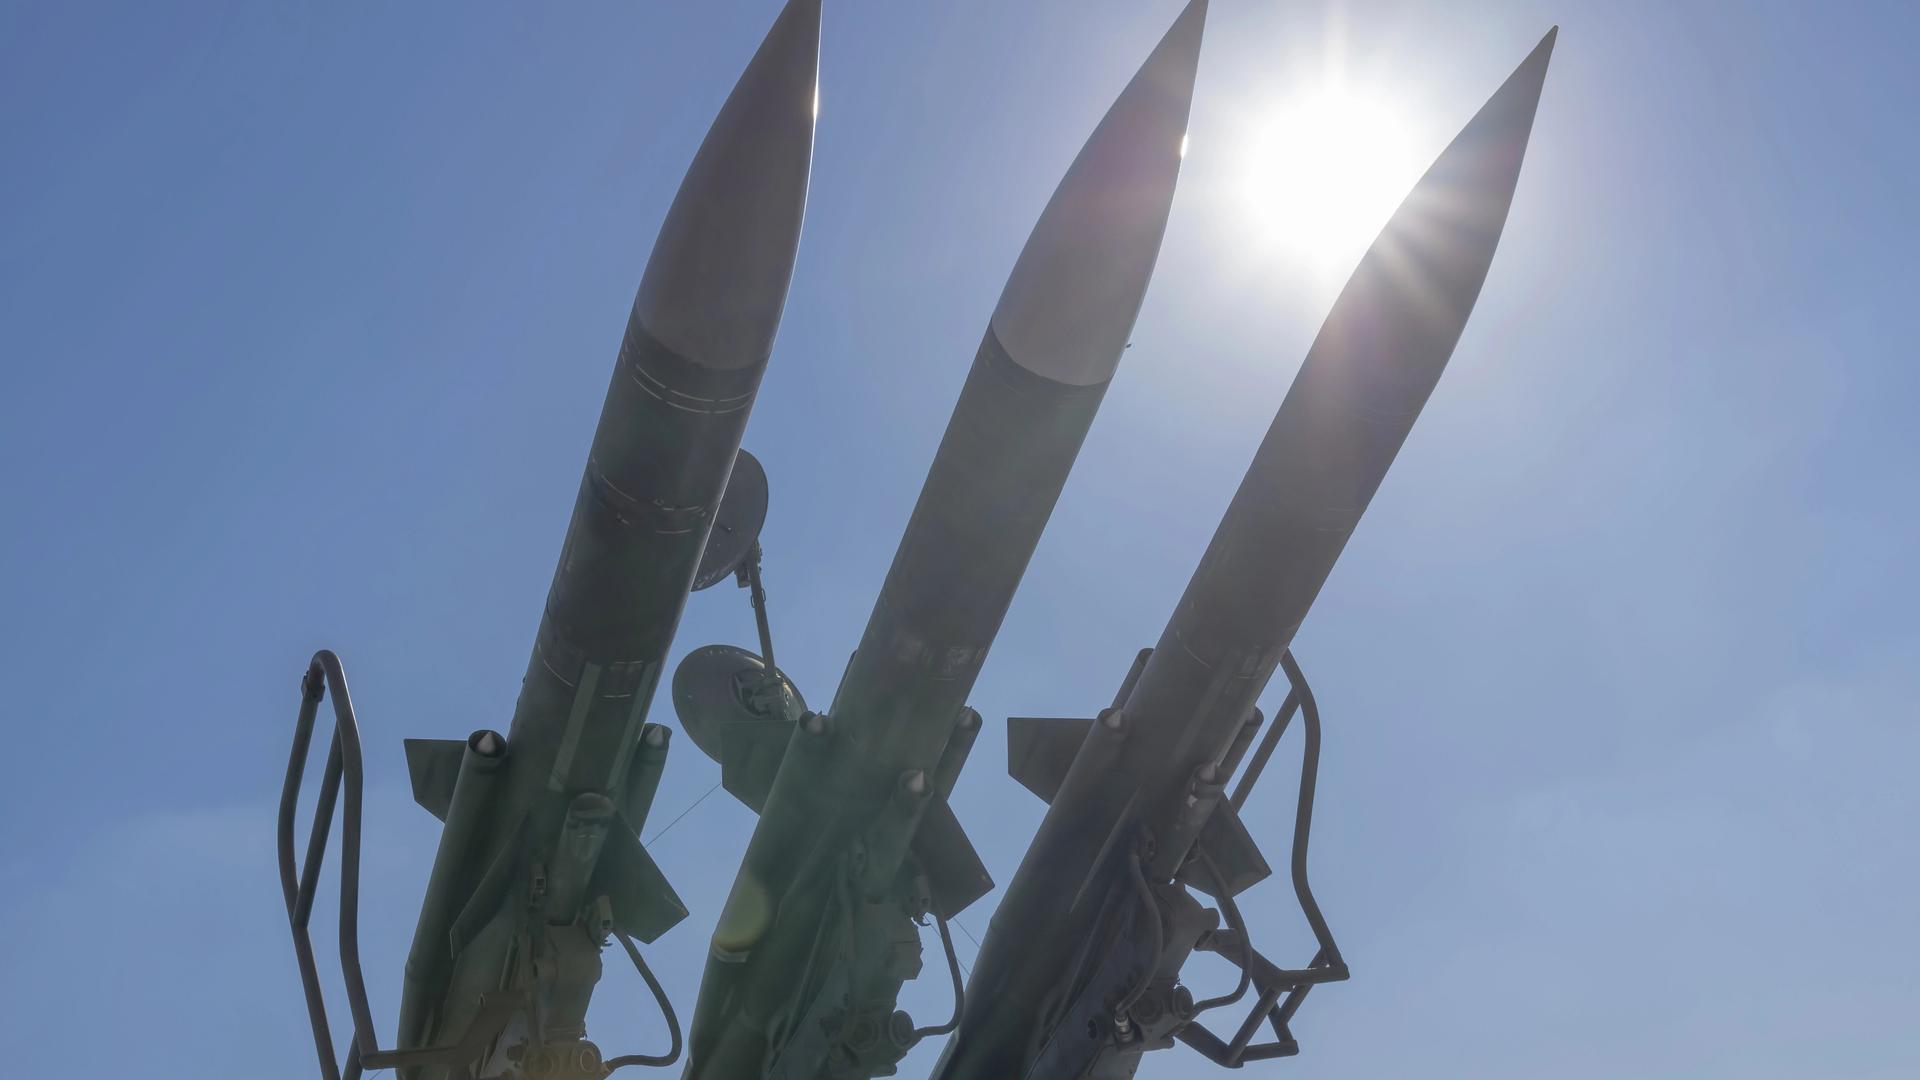 Drei Langstreckenraketen gegen die Sonne fotografiert. Ab 2026 sollen US-Raketen mit großer Reichweite in Deutschland stationiert werden. 